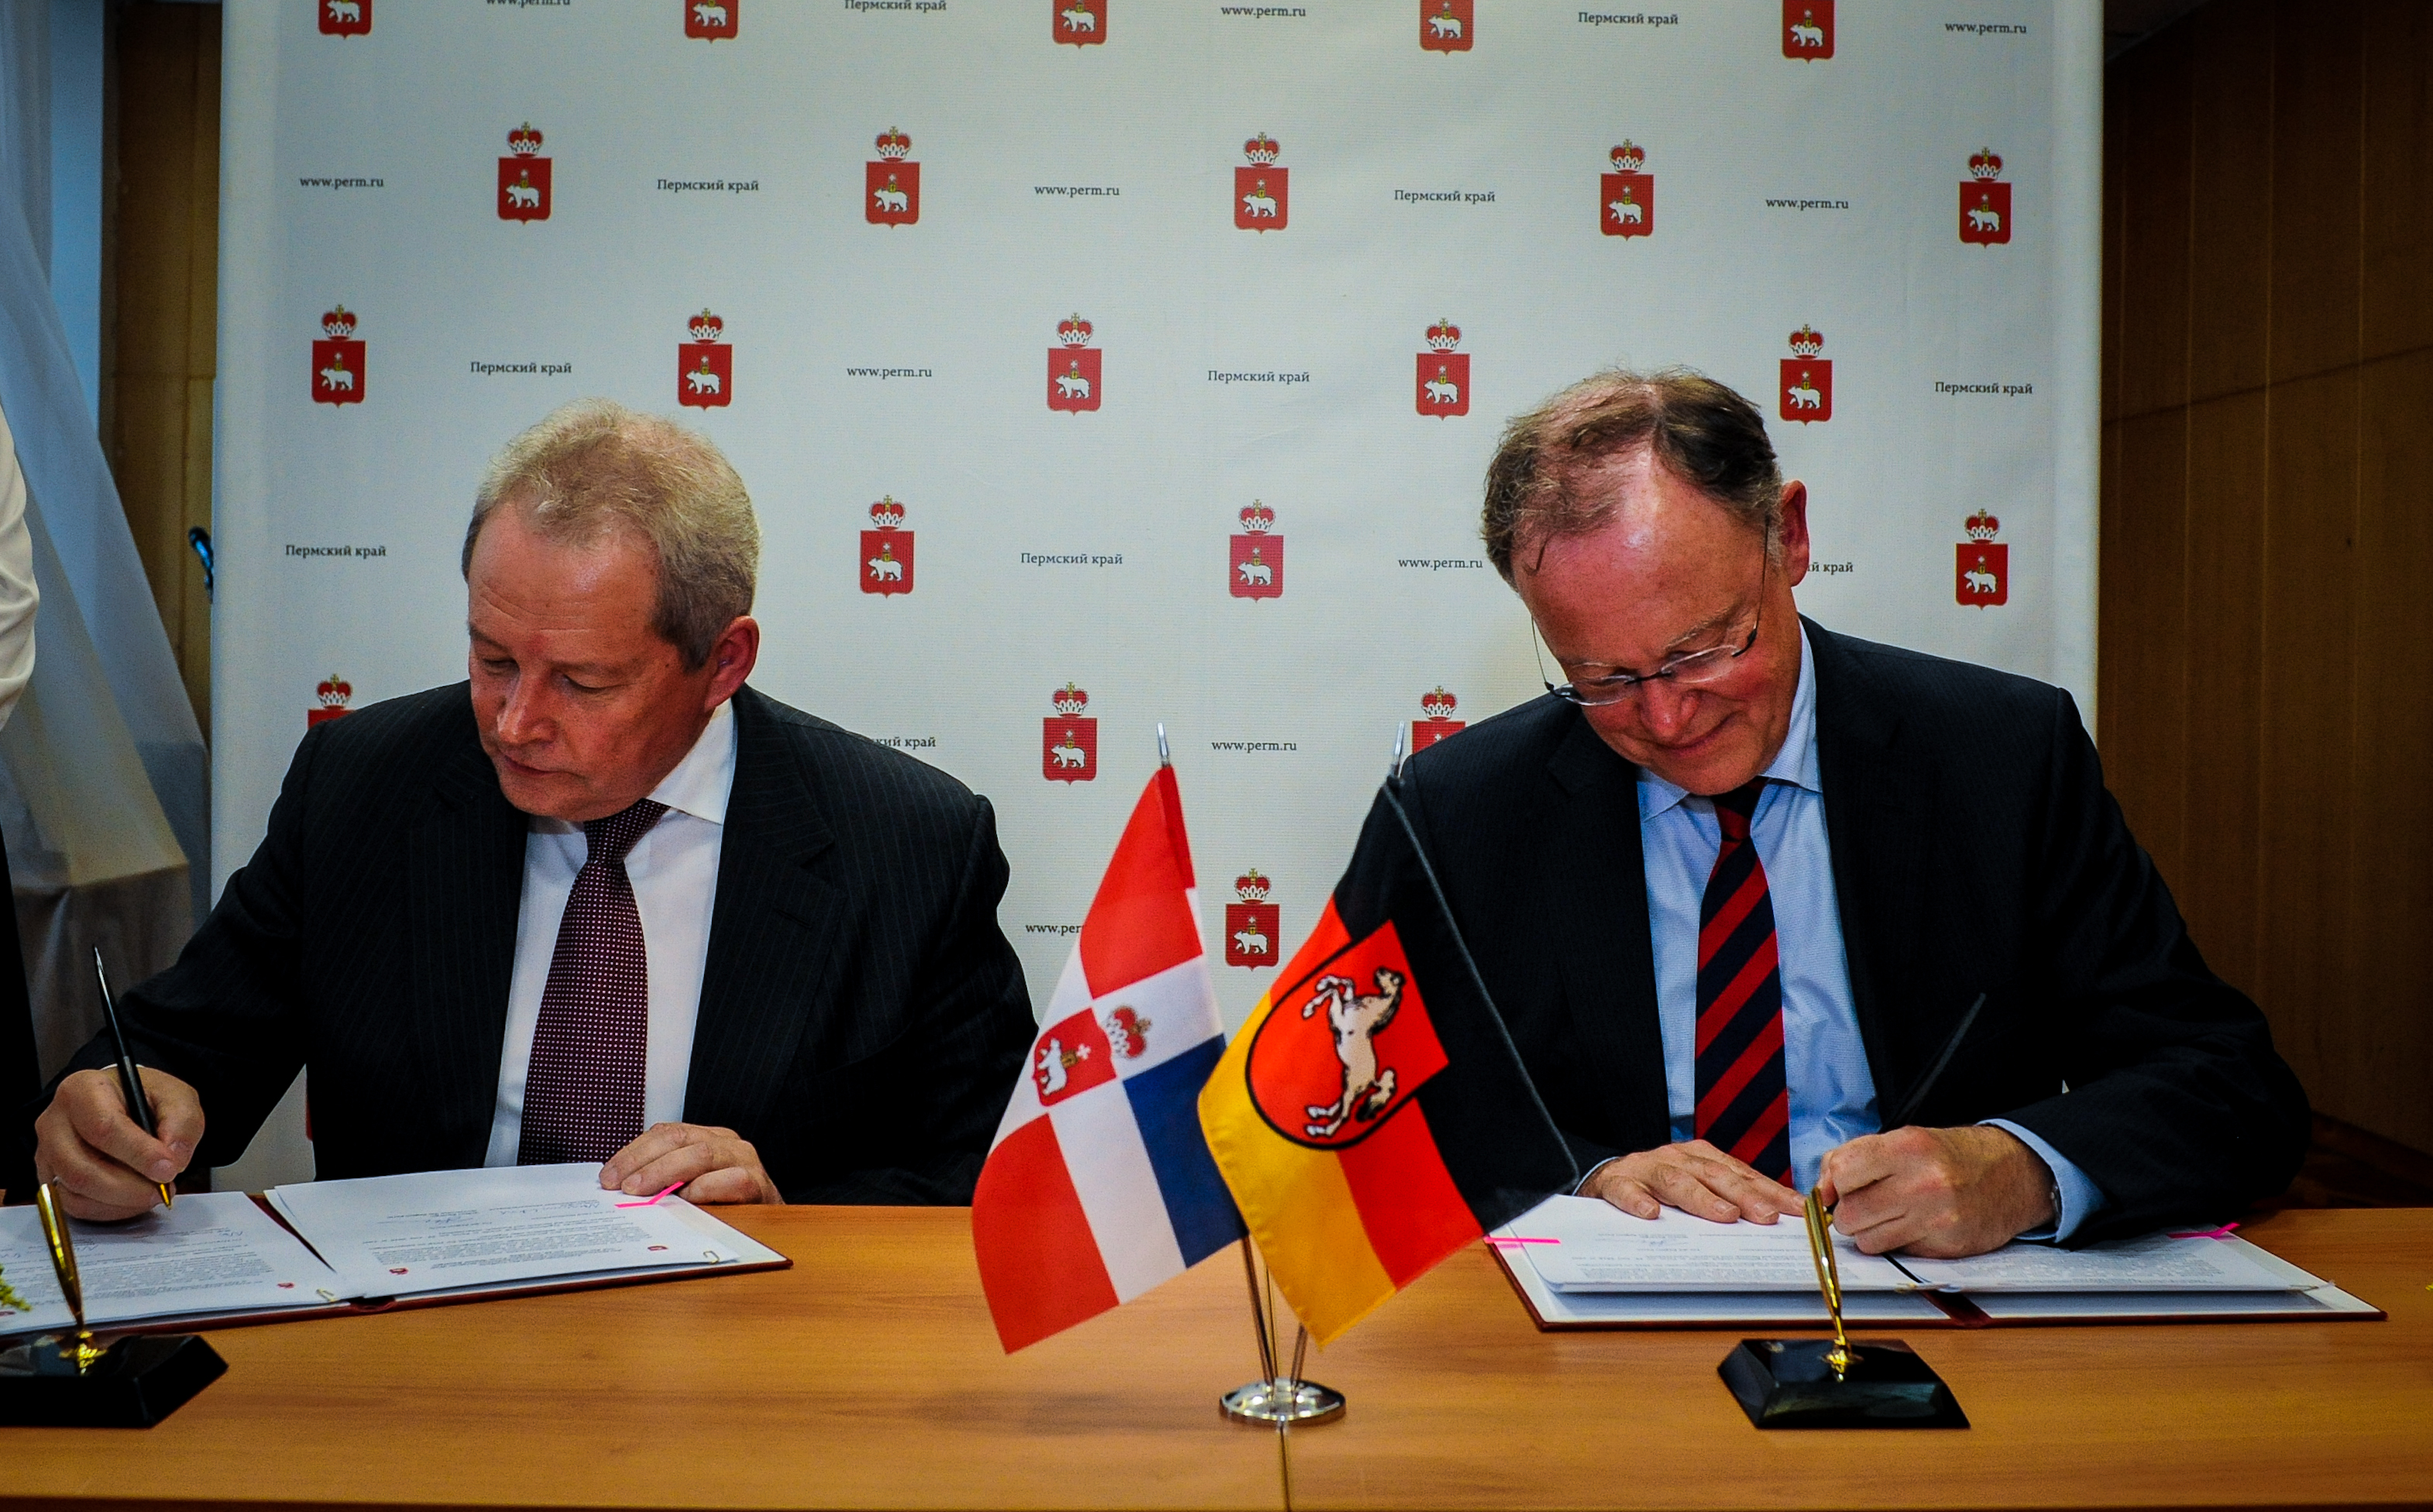 Виктор Басаргин и Премьер-министр земли Нижняя Саксония Штефан Вайль подписали план совместных мероприятий